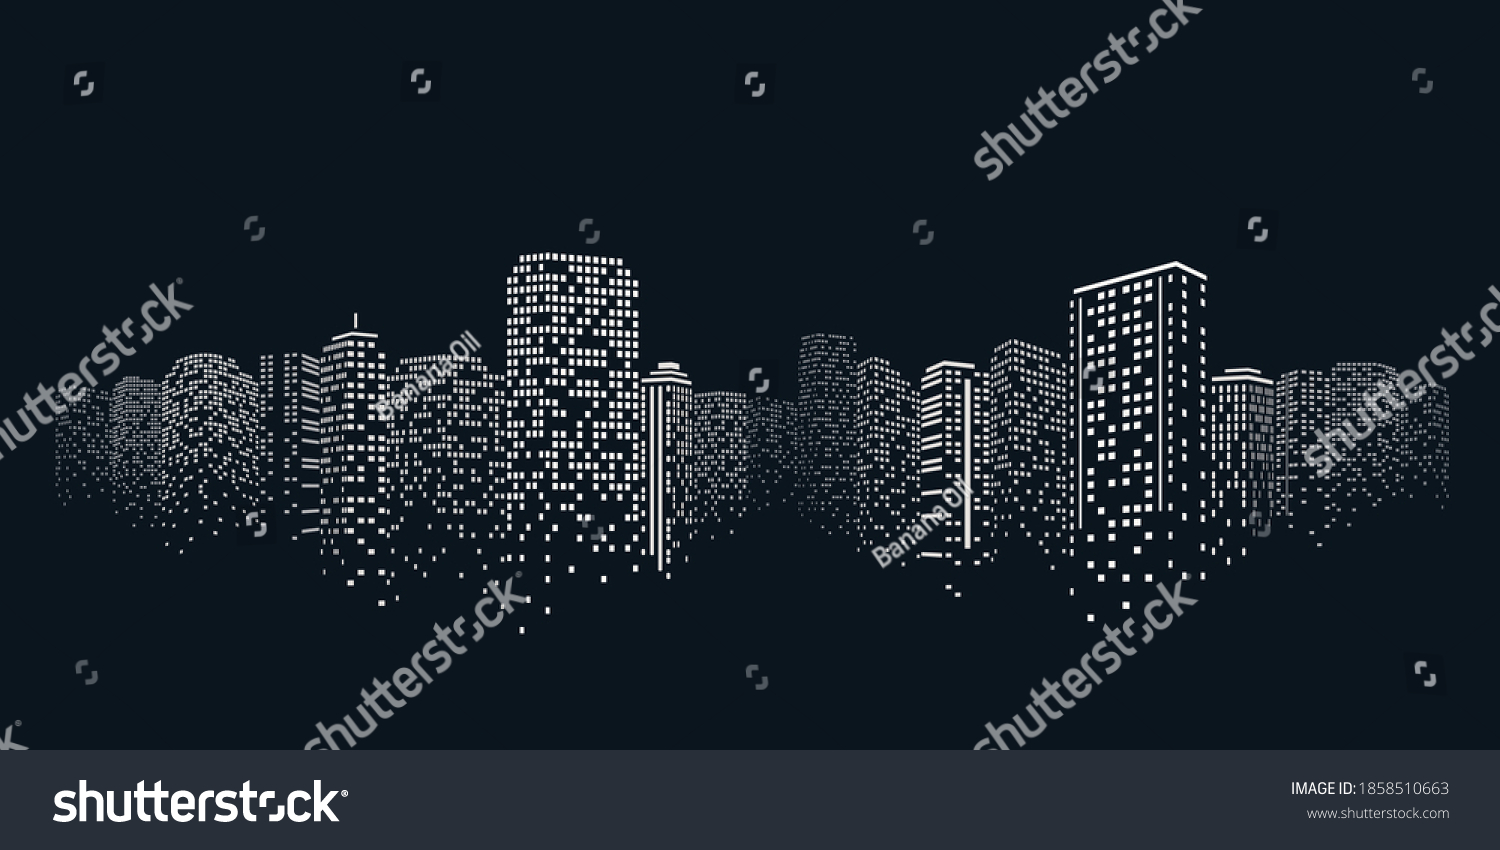 城市场景的夜间时间 城市之夜黑色背景 库存矢量图 免版税 Shutterstock